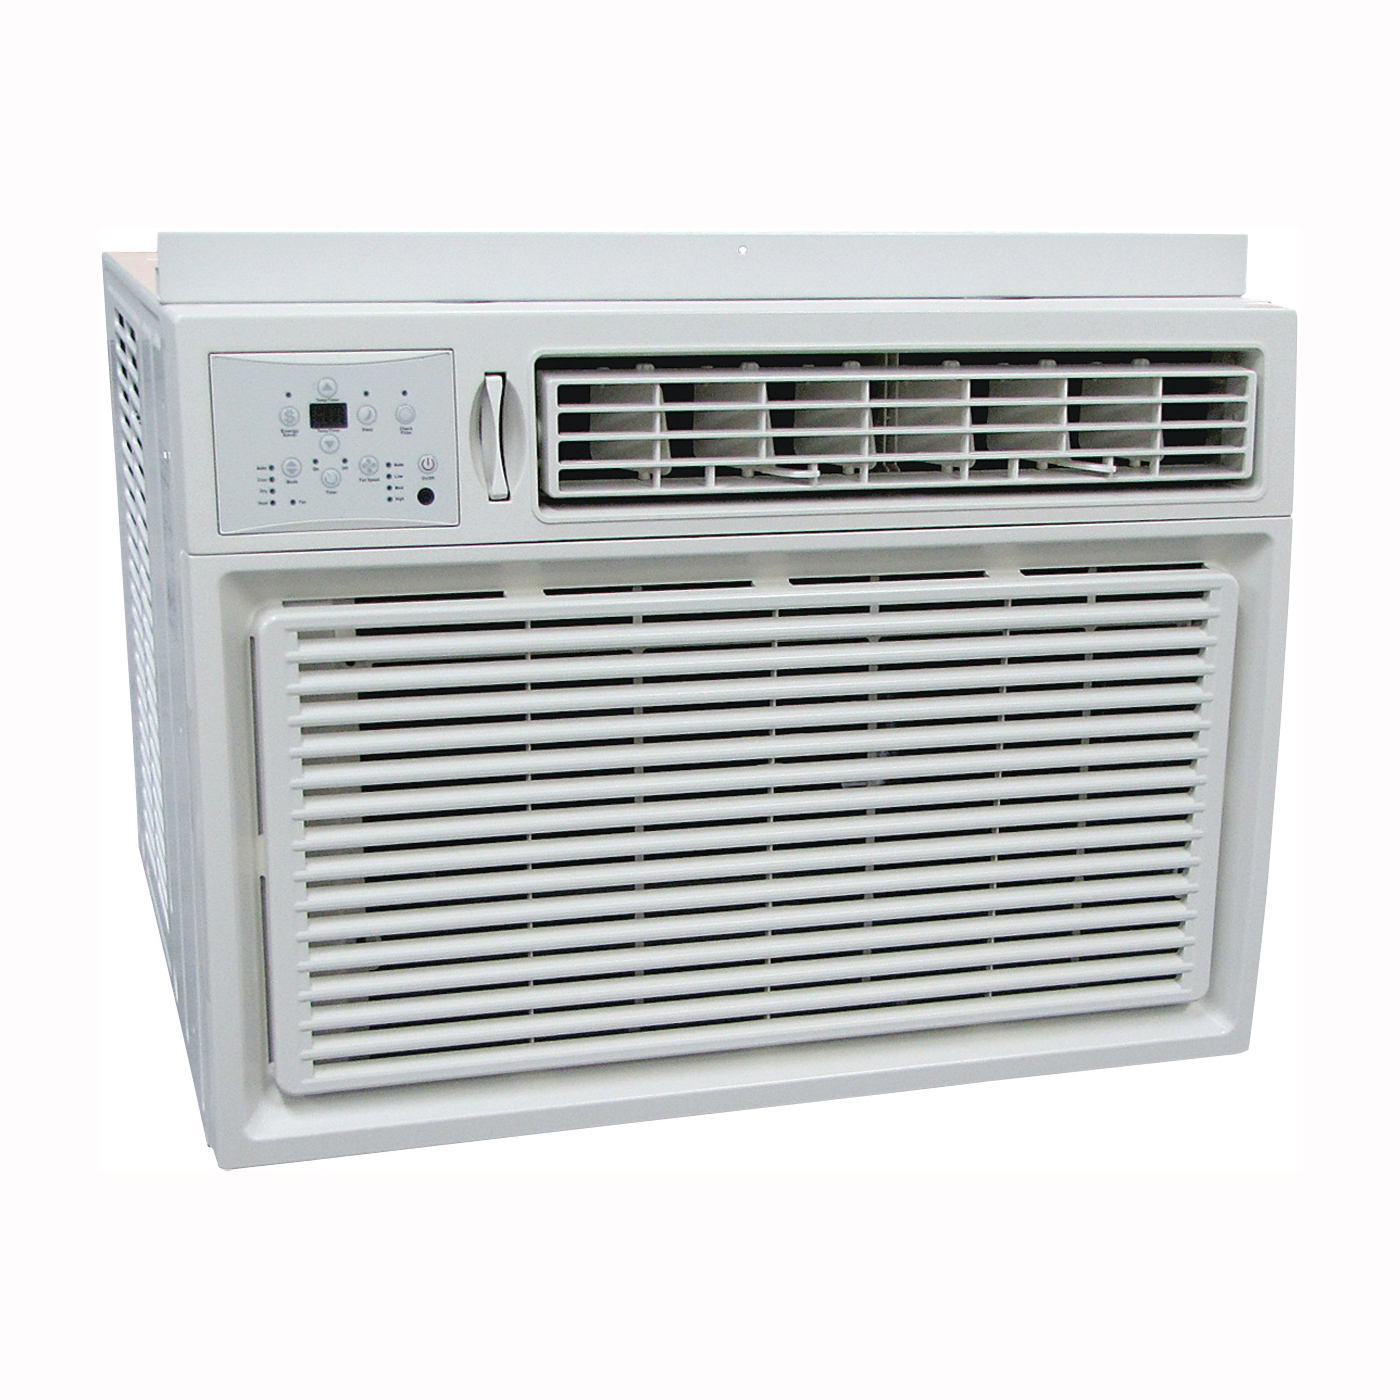 REG-253M Room Air Conditioner, 208/230 V, 60 Hz, 24,700, 25,000 Btu/hr Cooling, 9.4 EER, 63/61/58 dB